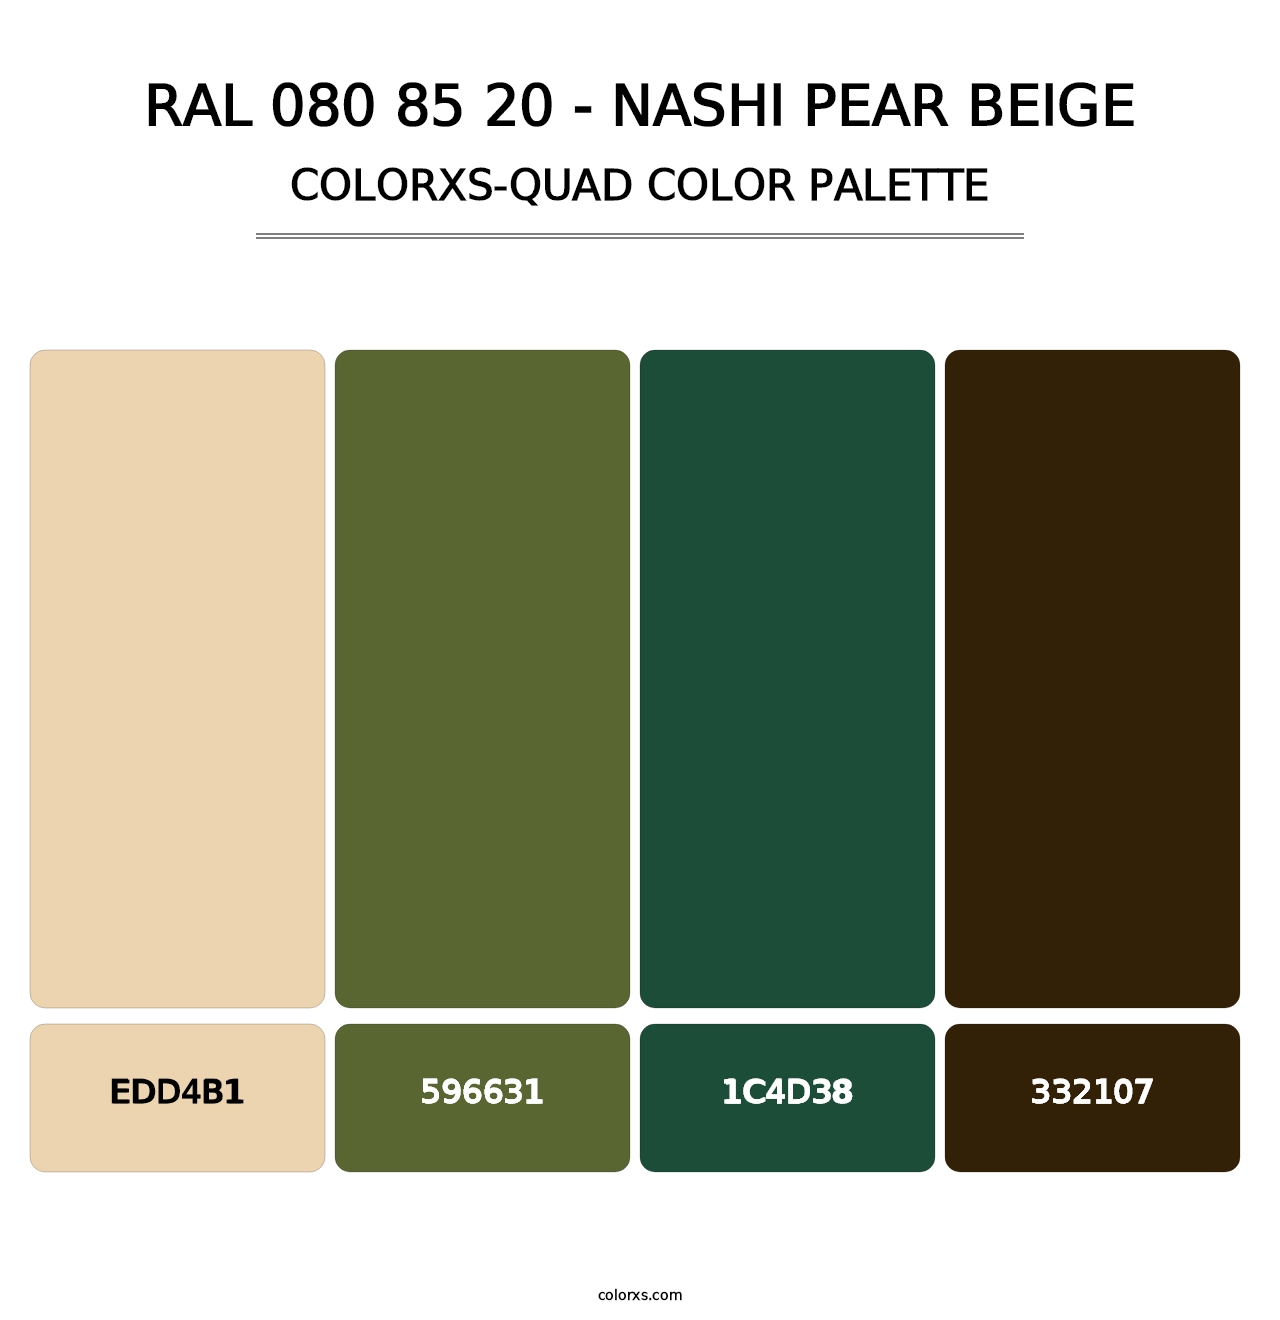 RAL 080 85 20 - Nashi Pear Beige - Colorxs Quad Palette